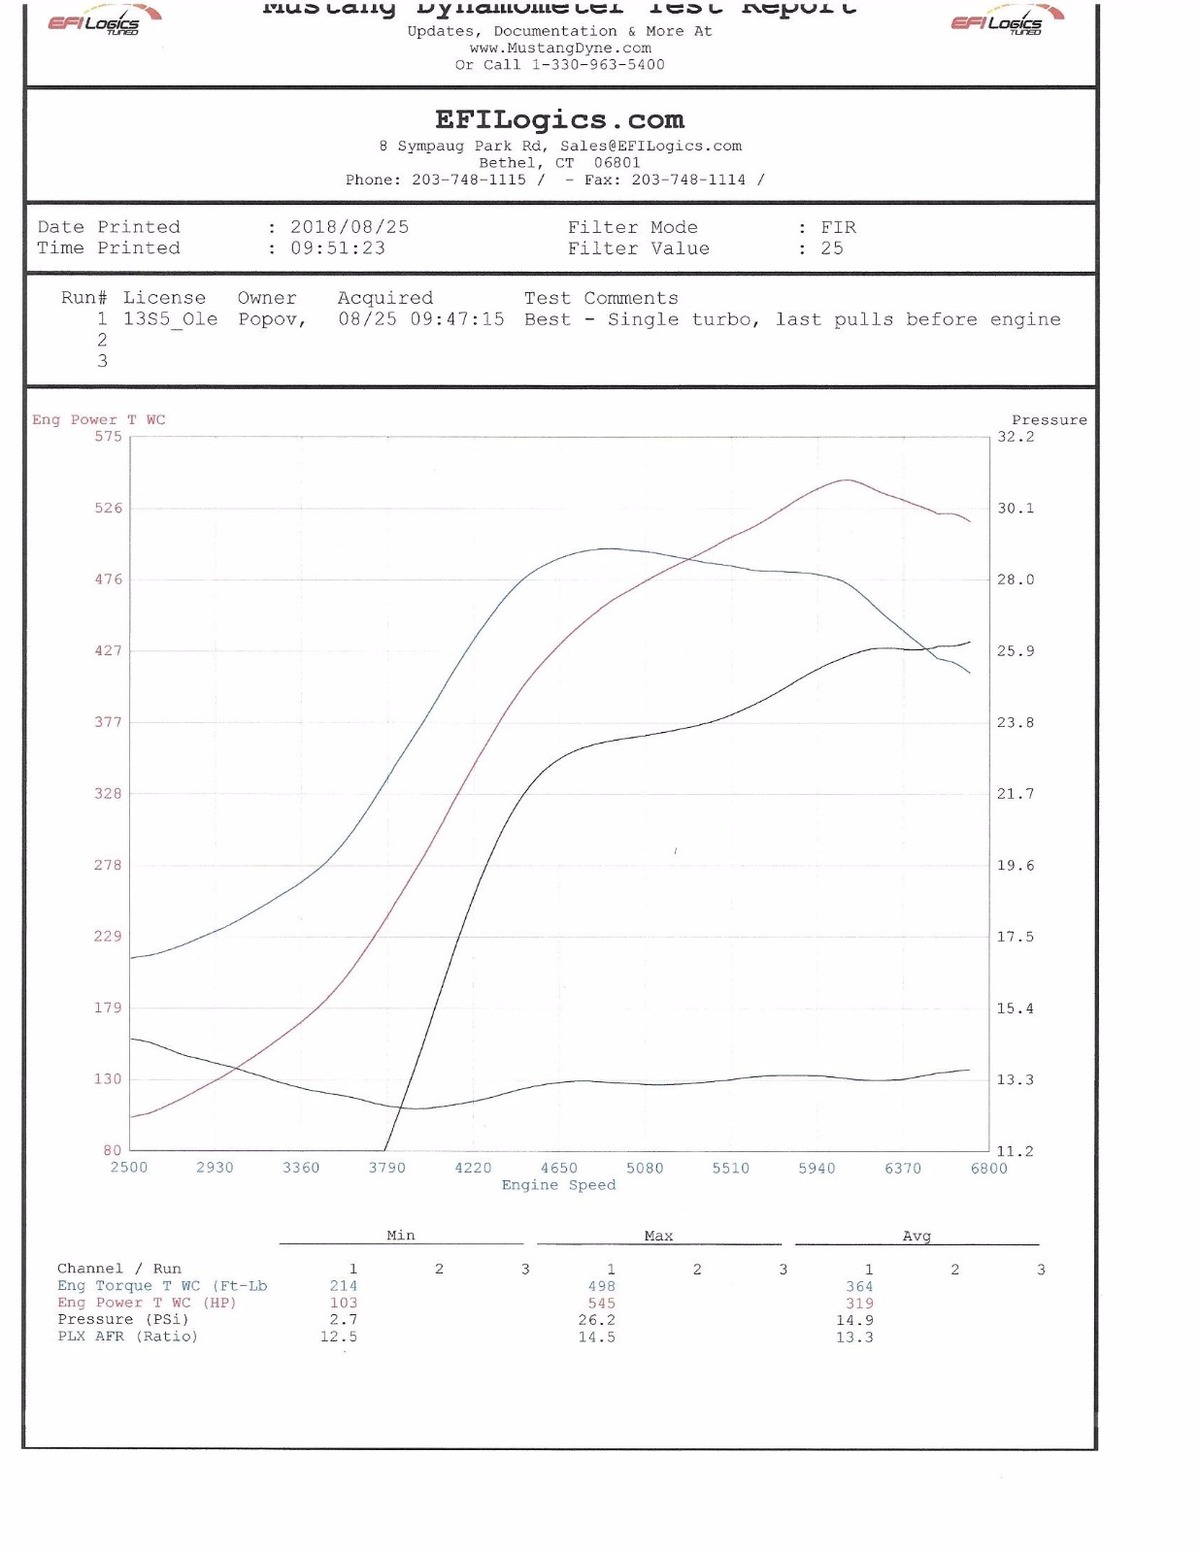 Audi S5 Dyno Graph Results